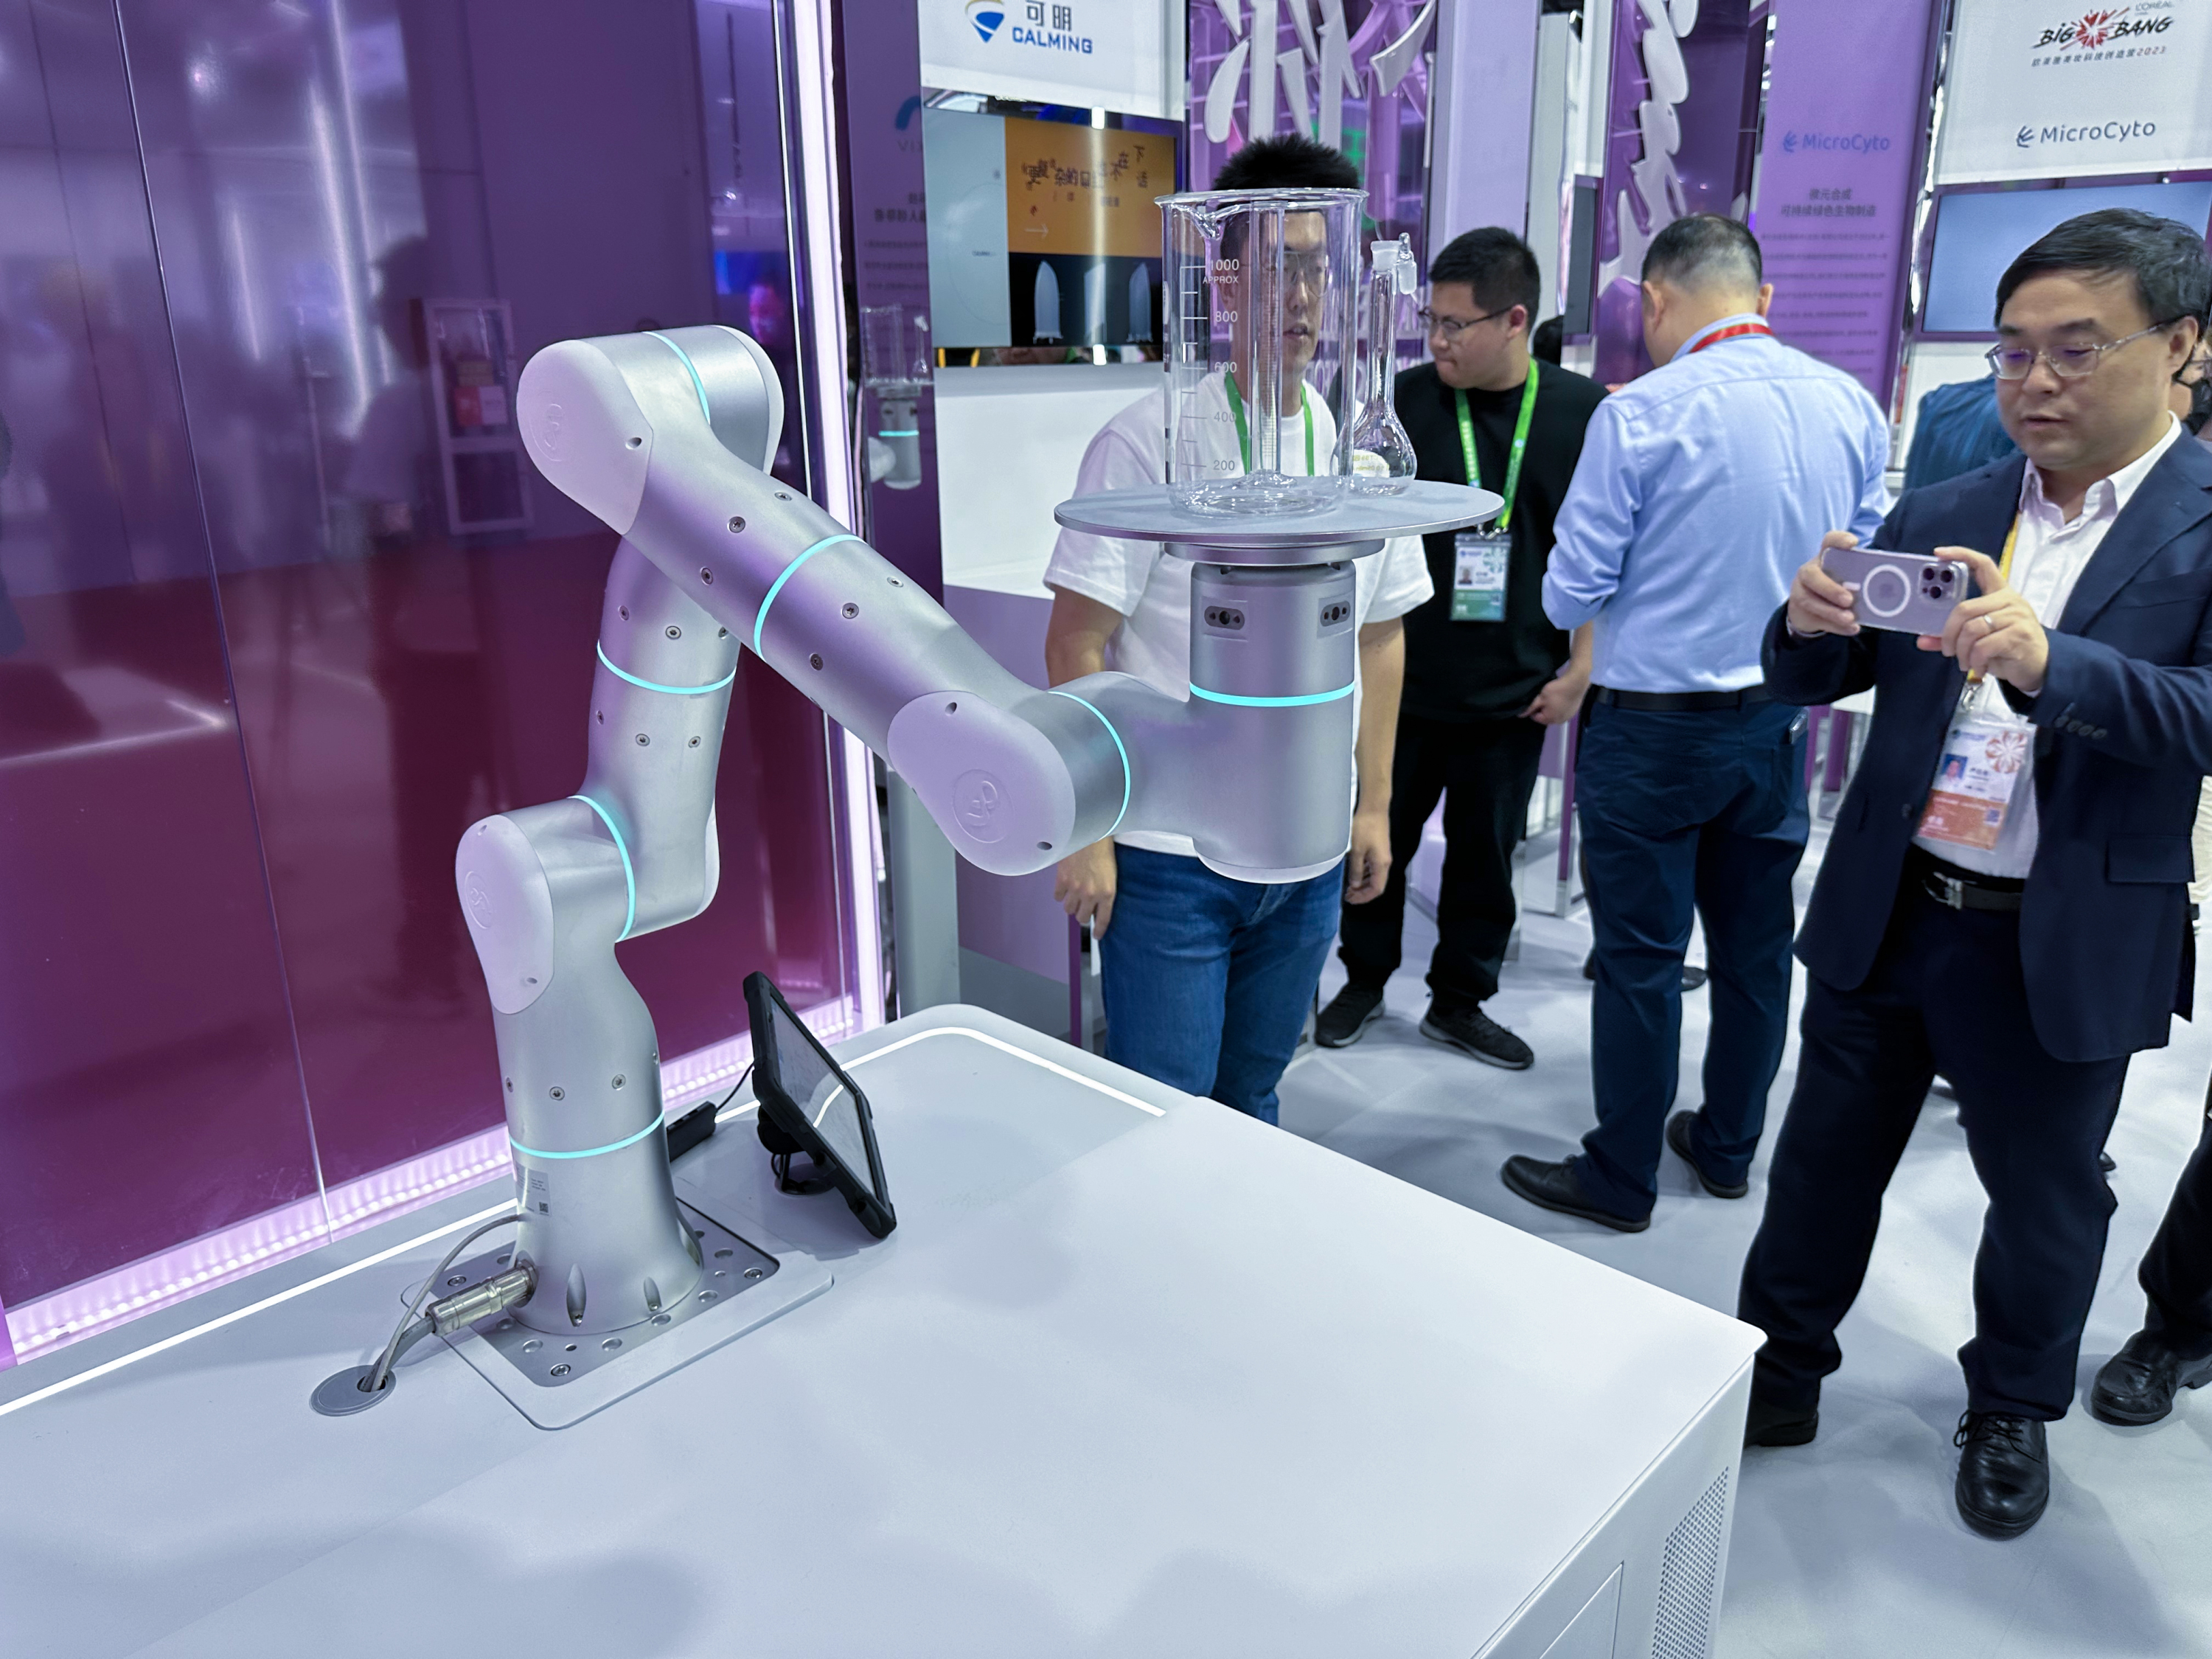 自适应机器人创新应用亮相进博会，非夕科技和“朋友们”共建智能未来